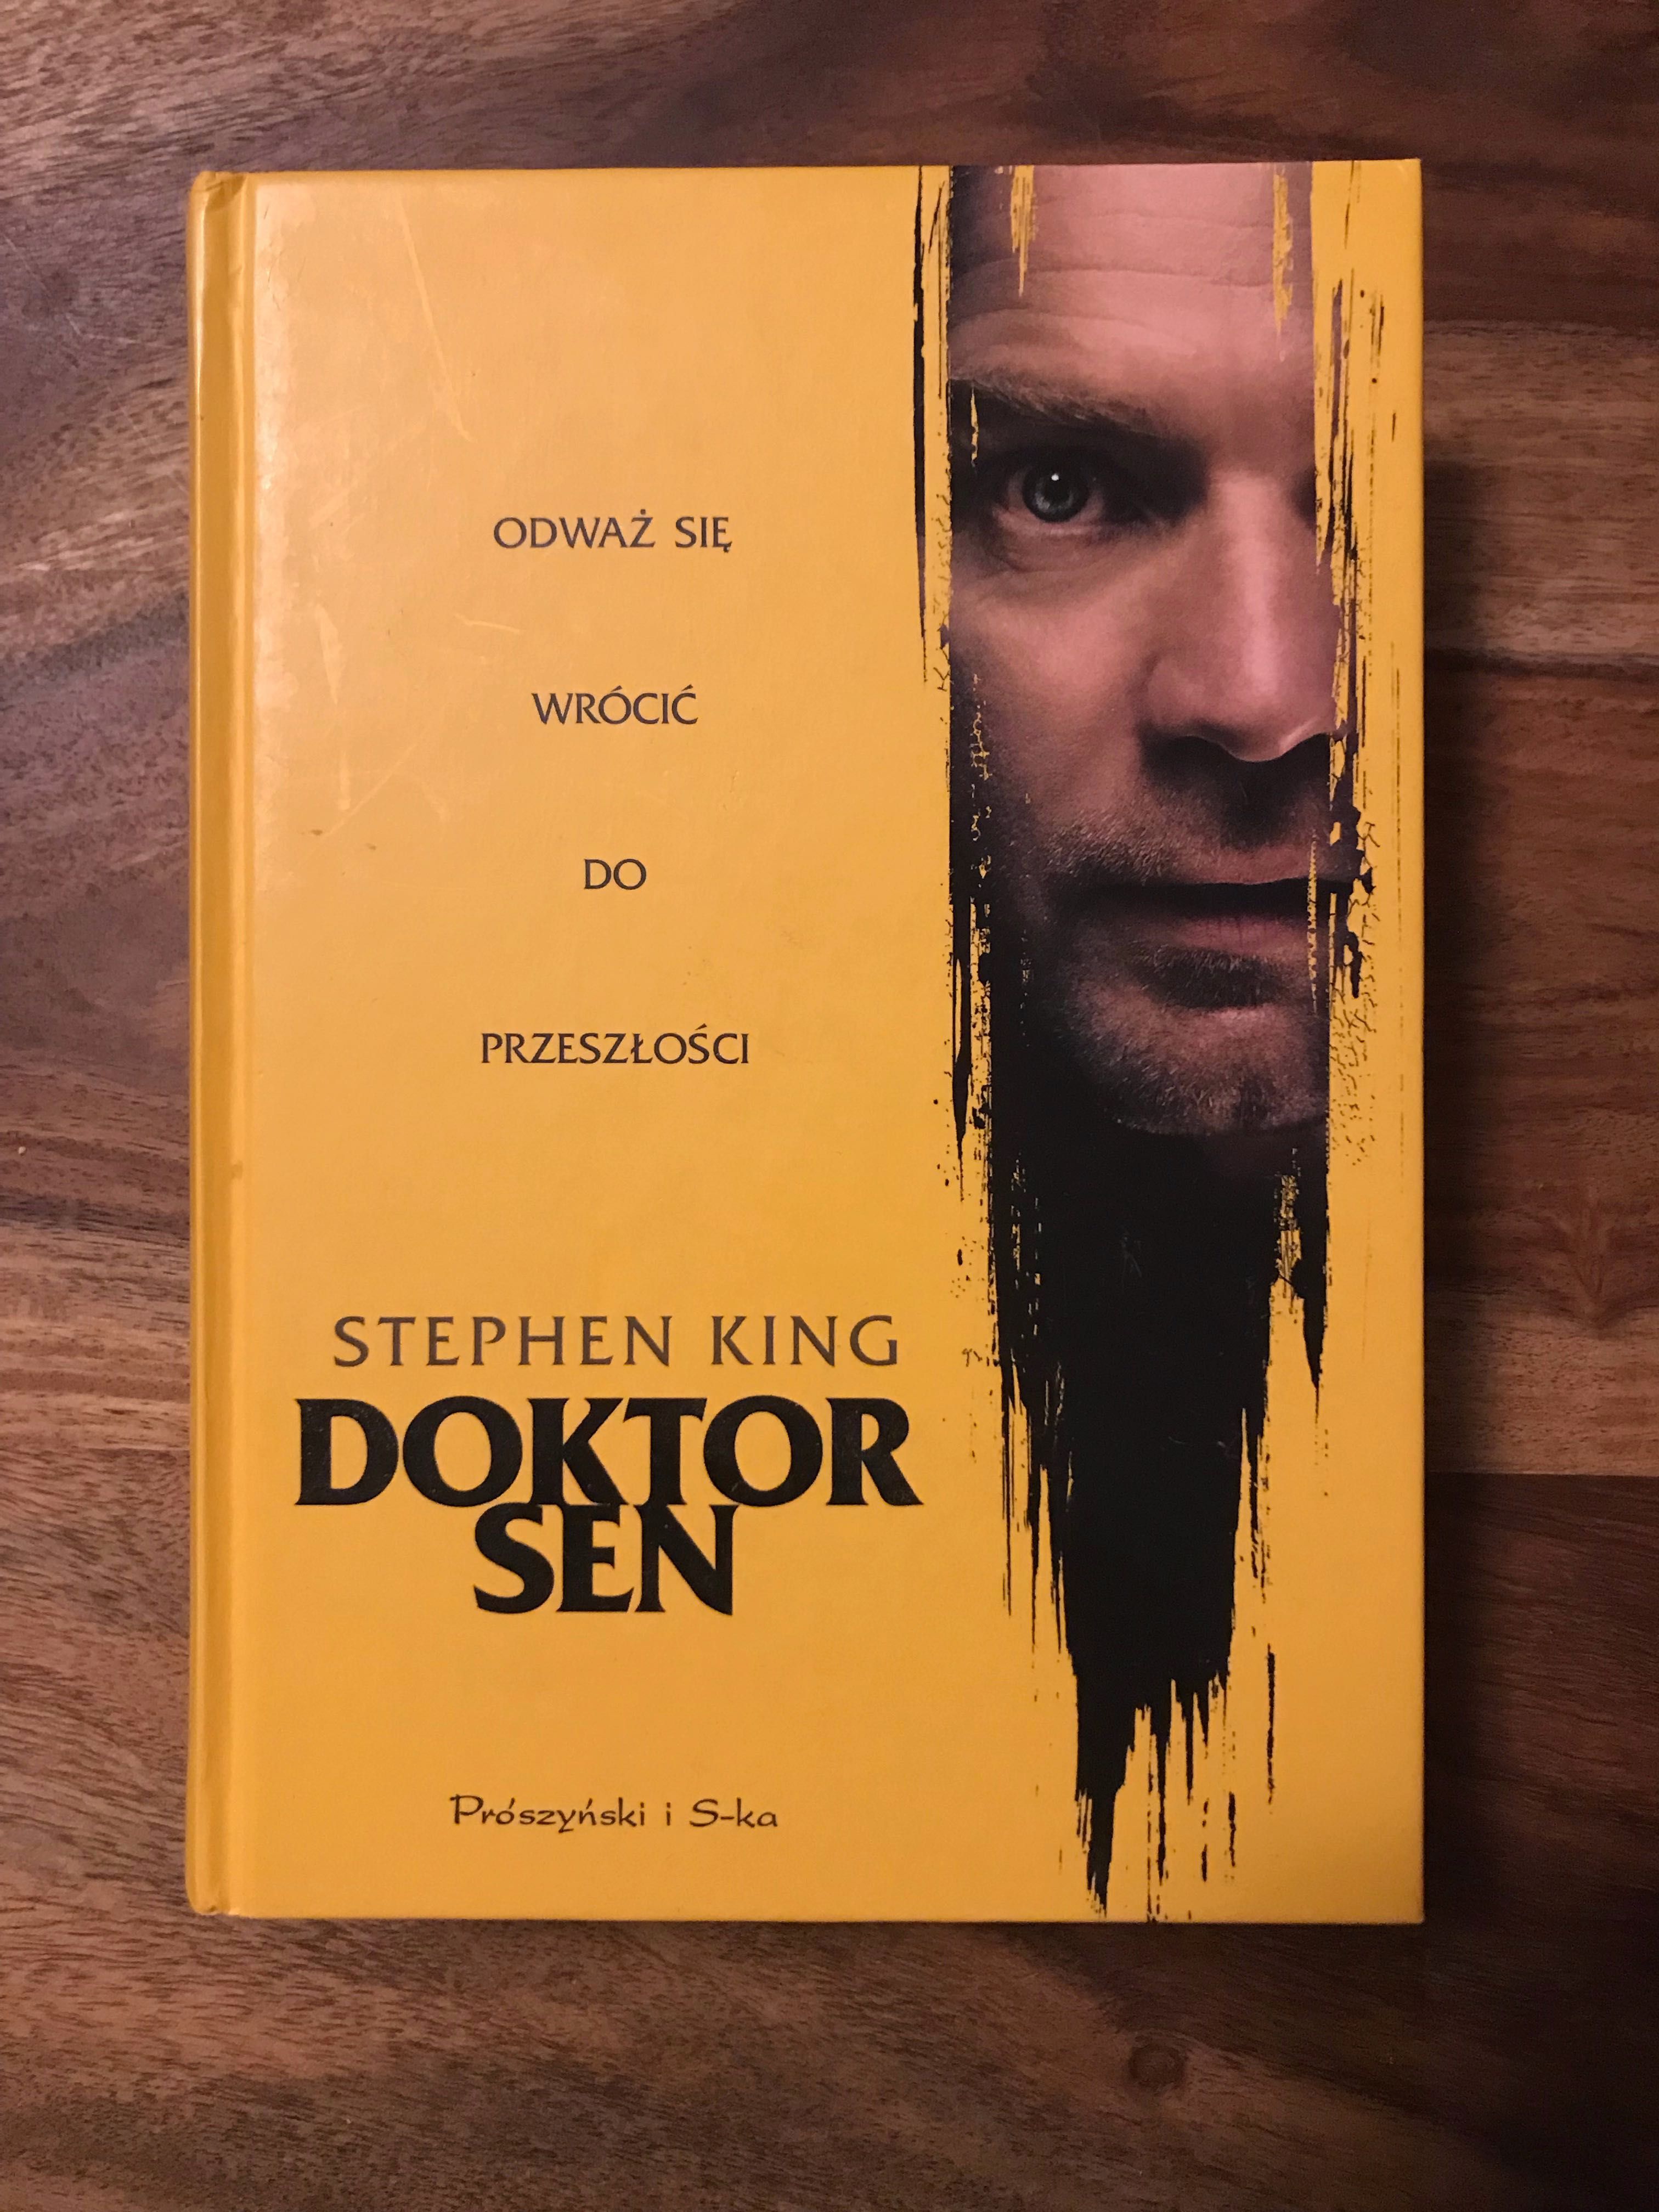 Stephen King "Doktor Sen"